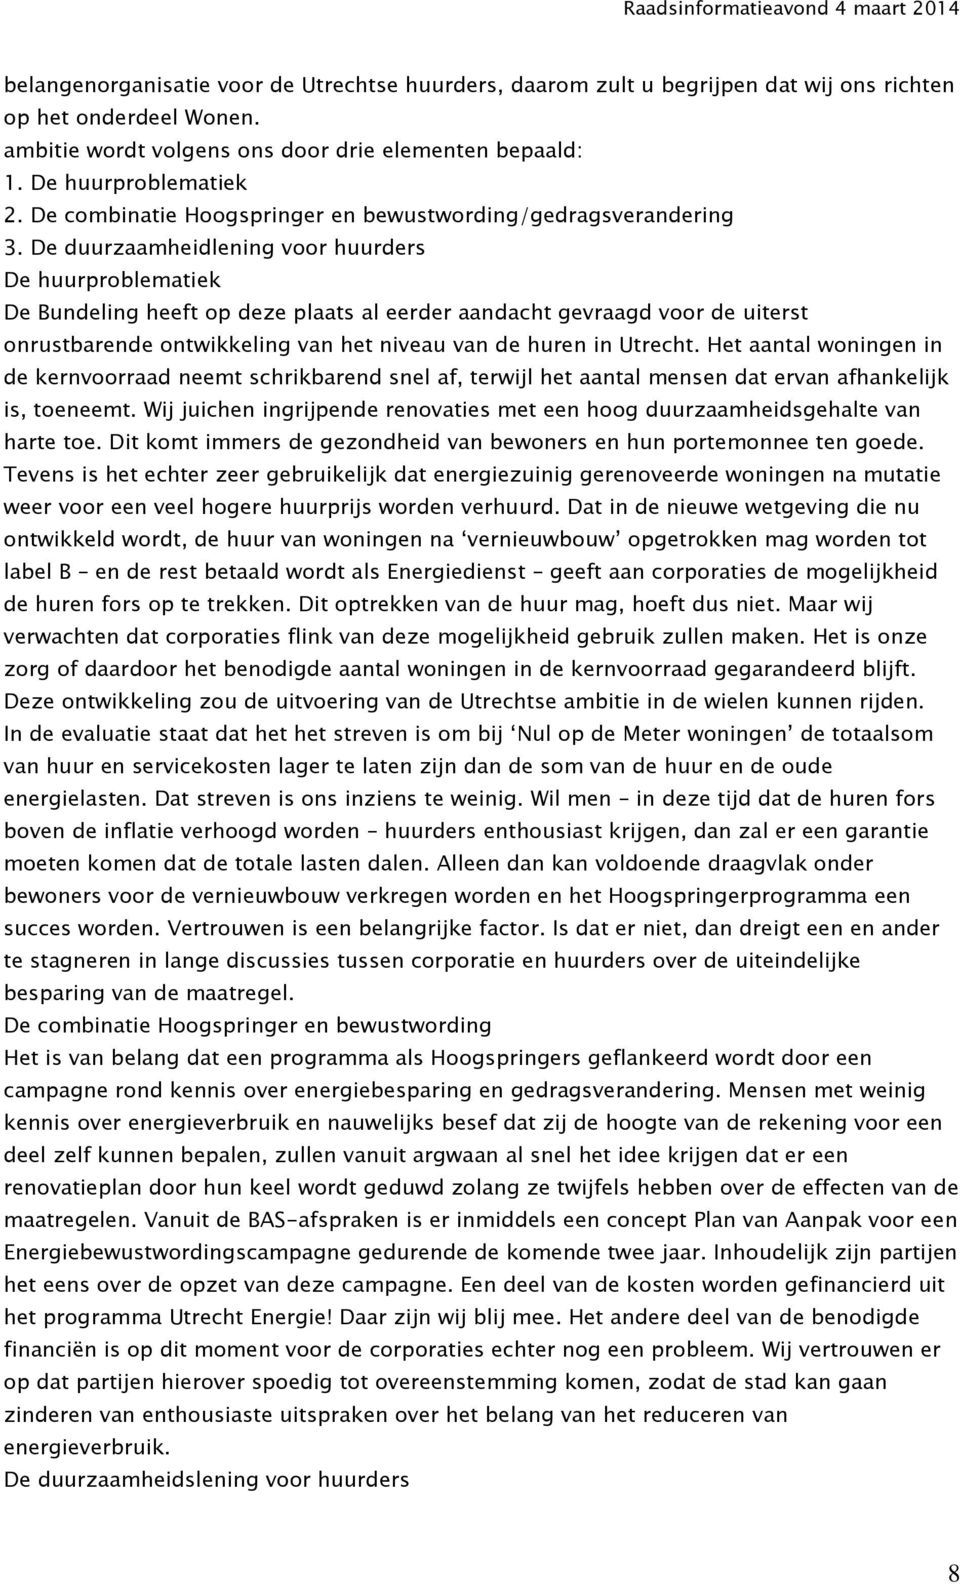 De duurzaamheidlening voor huurders De huurproblematiek De Bundeling heeft op deze plaats al eerder aandacht gevraagd voor de uiterst onrustbarende ontwikkeling van het niveau van de huren in Utrecht.